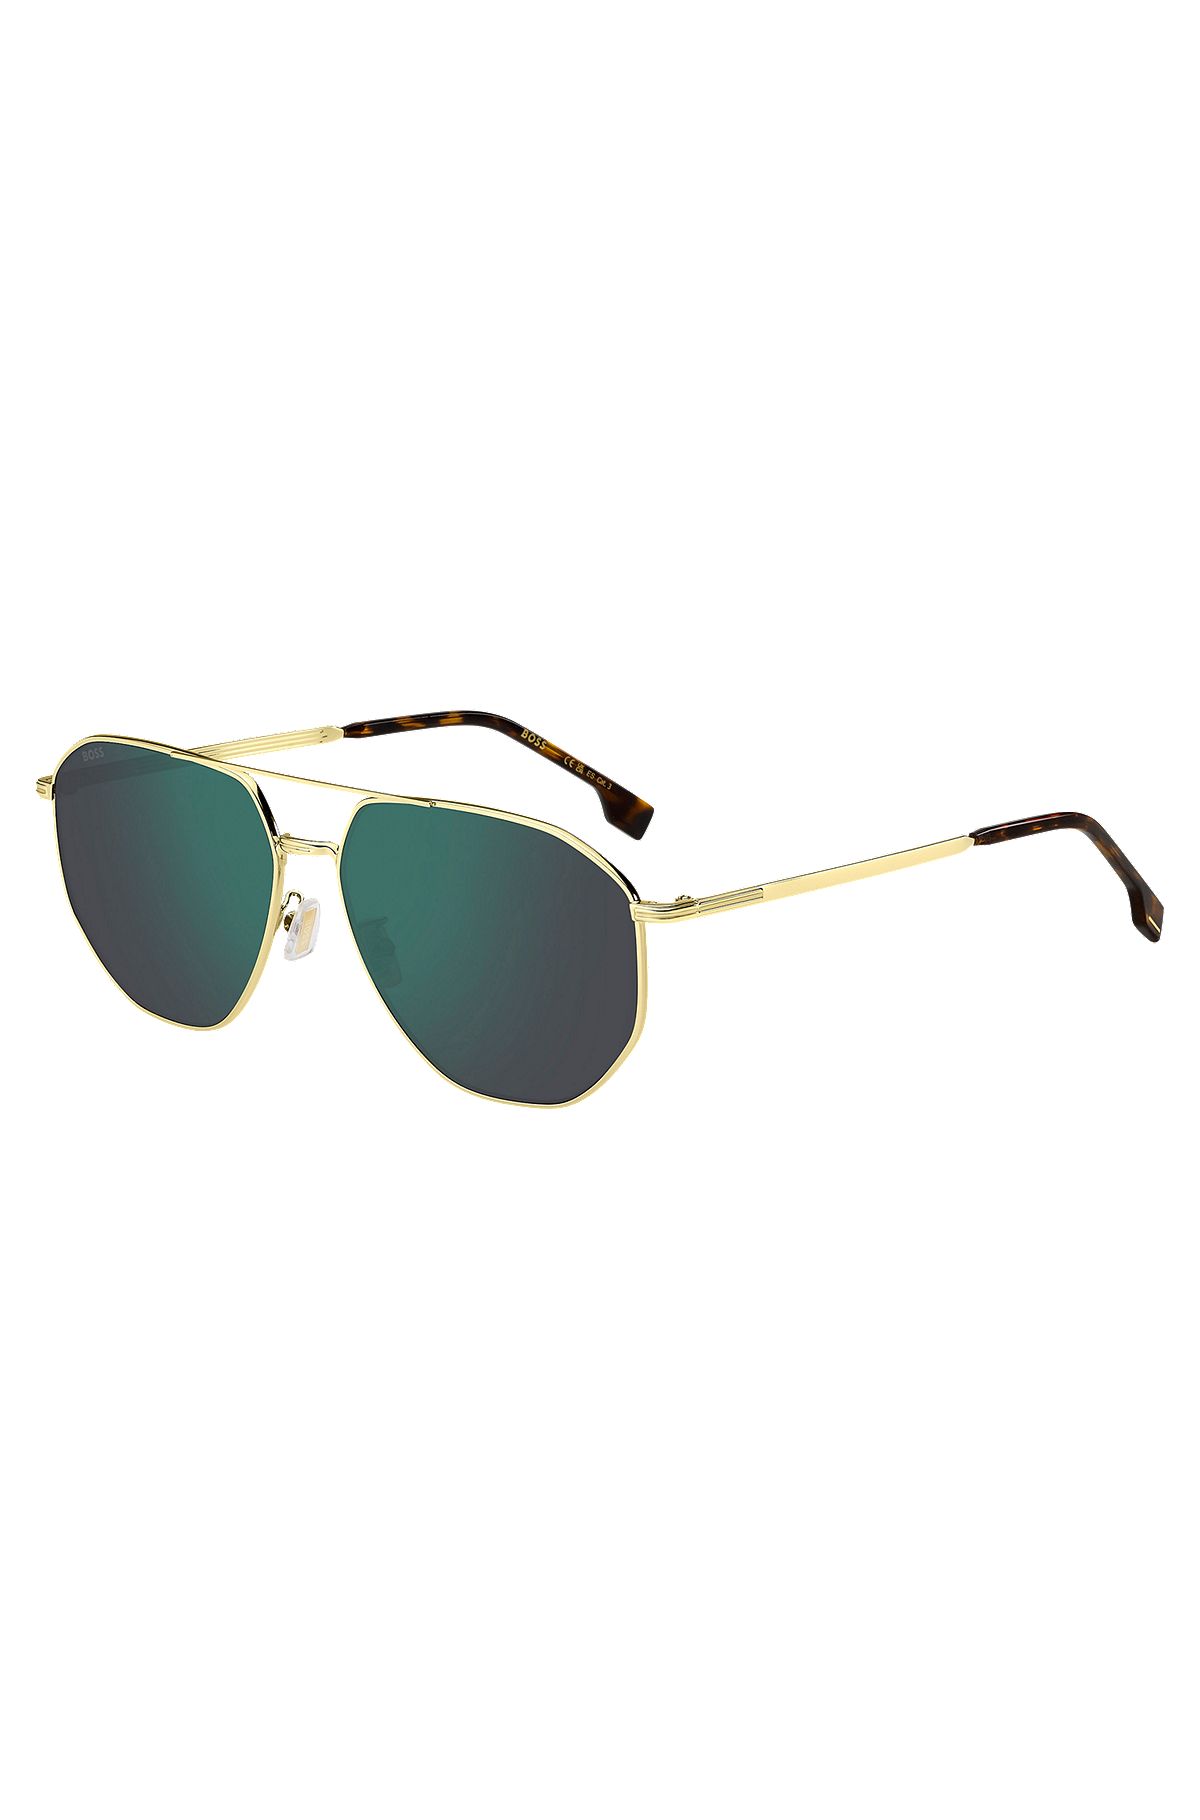 Goldfarbene Sonnenbrille mit grünen Gläsern, Gold